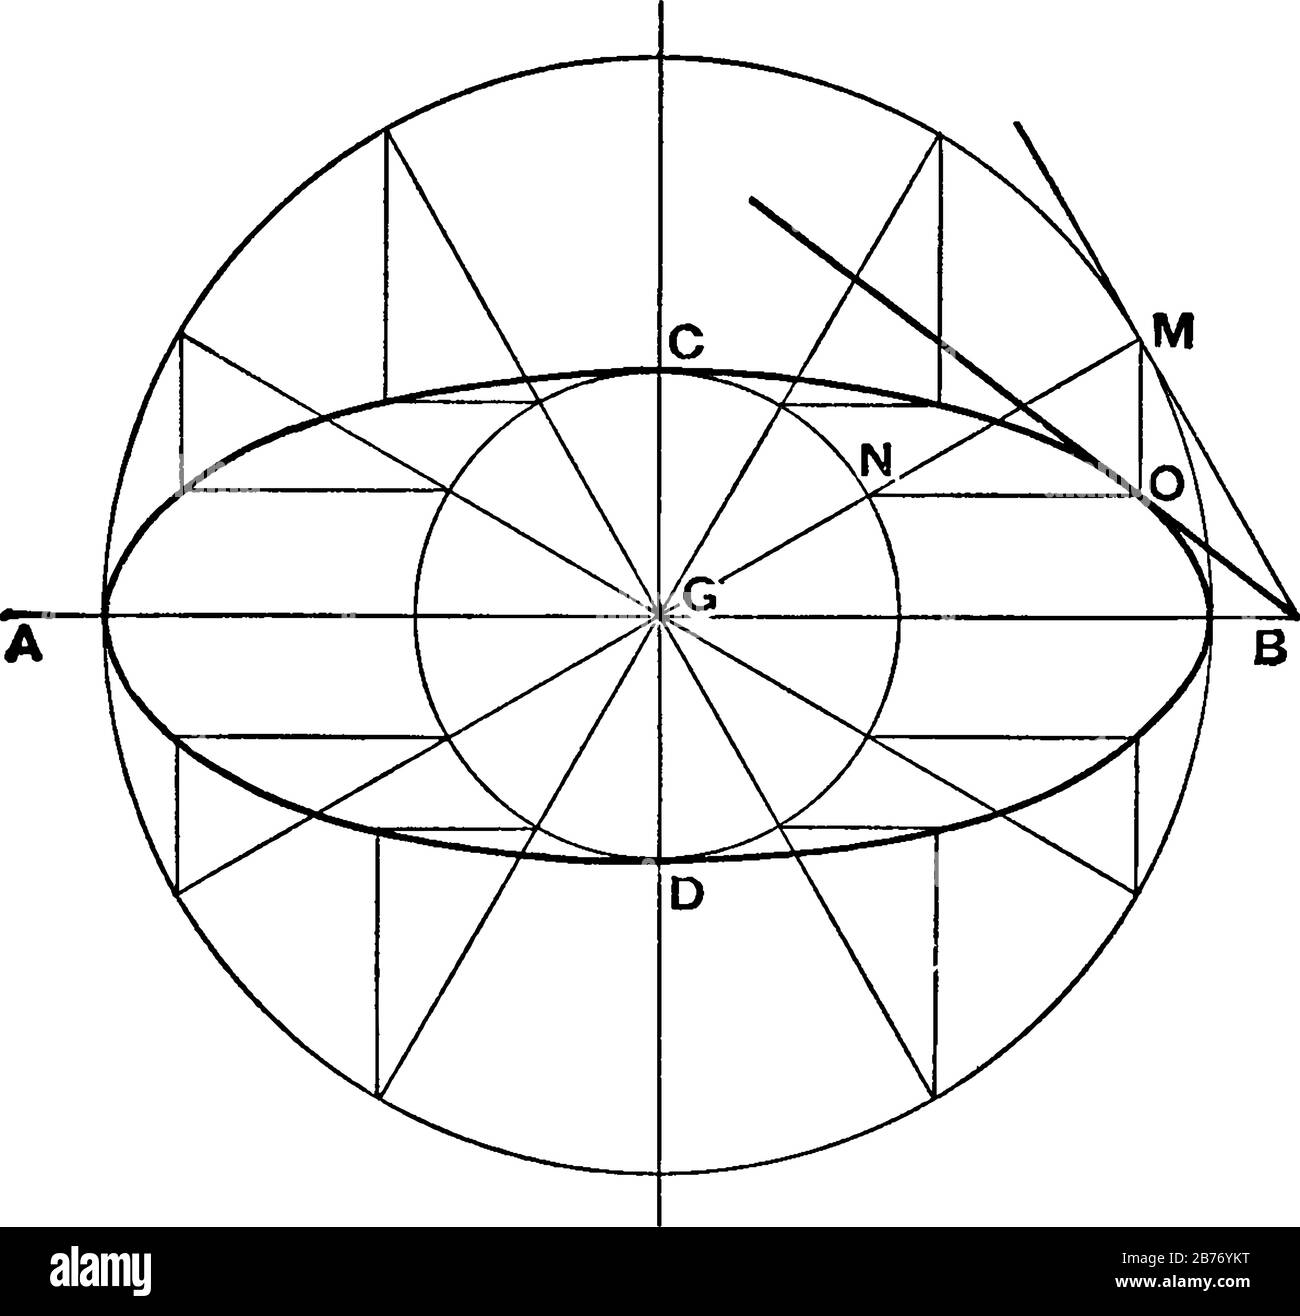 Un'immagine che mostra il terzo metodo del Disegnatore per disegnare un'ellisse, una curva in un piano che circonda due punti focali in modo tale che la somma della distanza Illustrazione Vettoriale